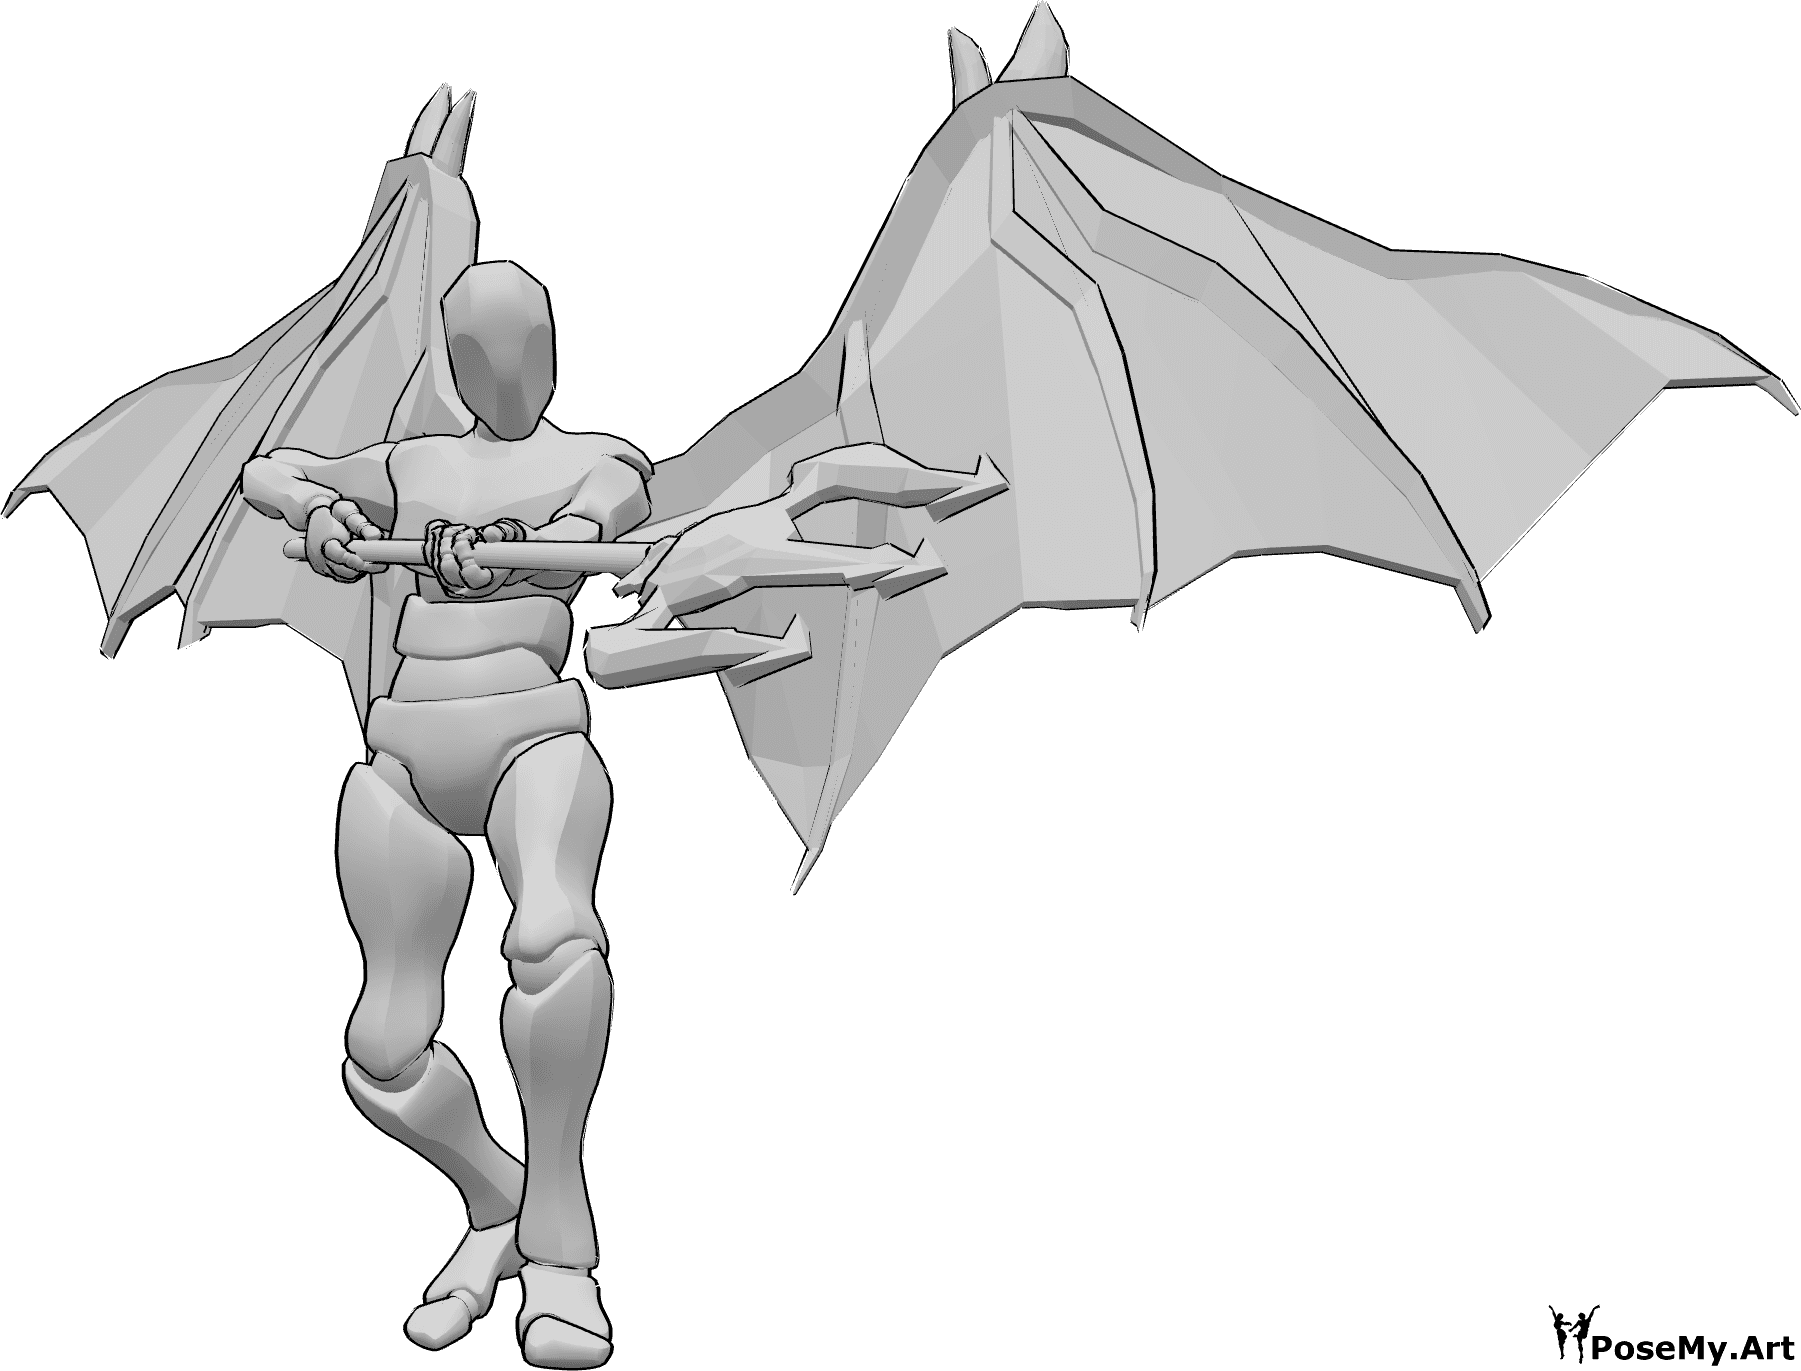 Référence des poses- Démon visant la pose du trident - L'homme aux ailes de diable s'apprête à attaquer avec son trident, qu'il tient à deux mains et vise vers le bas.